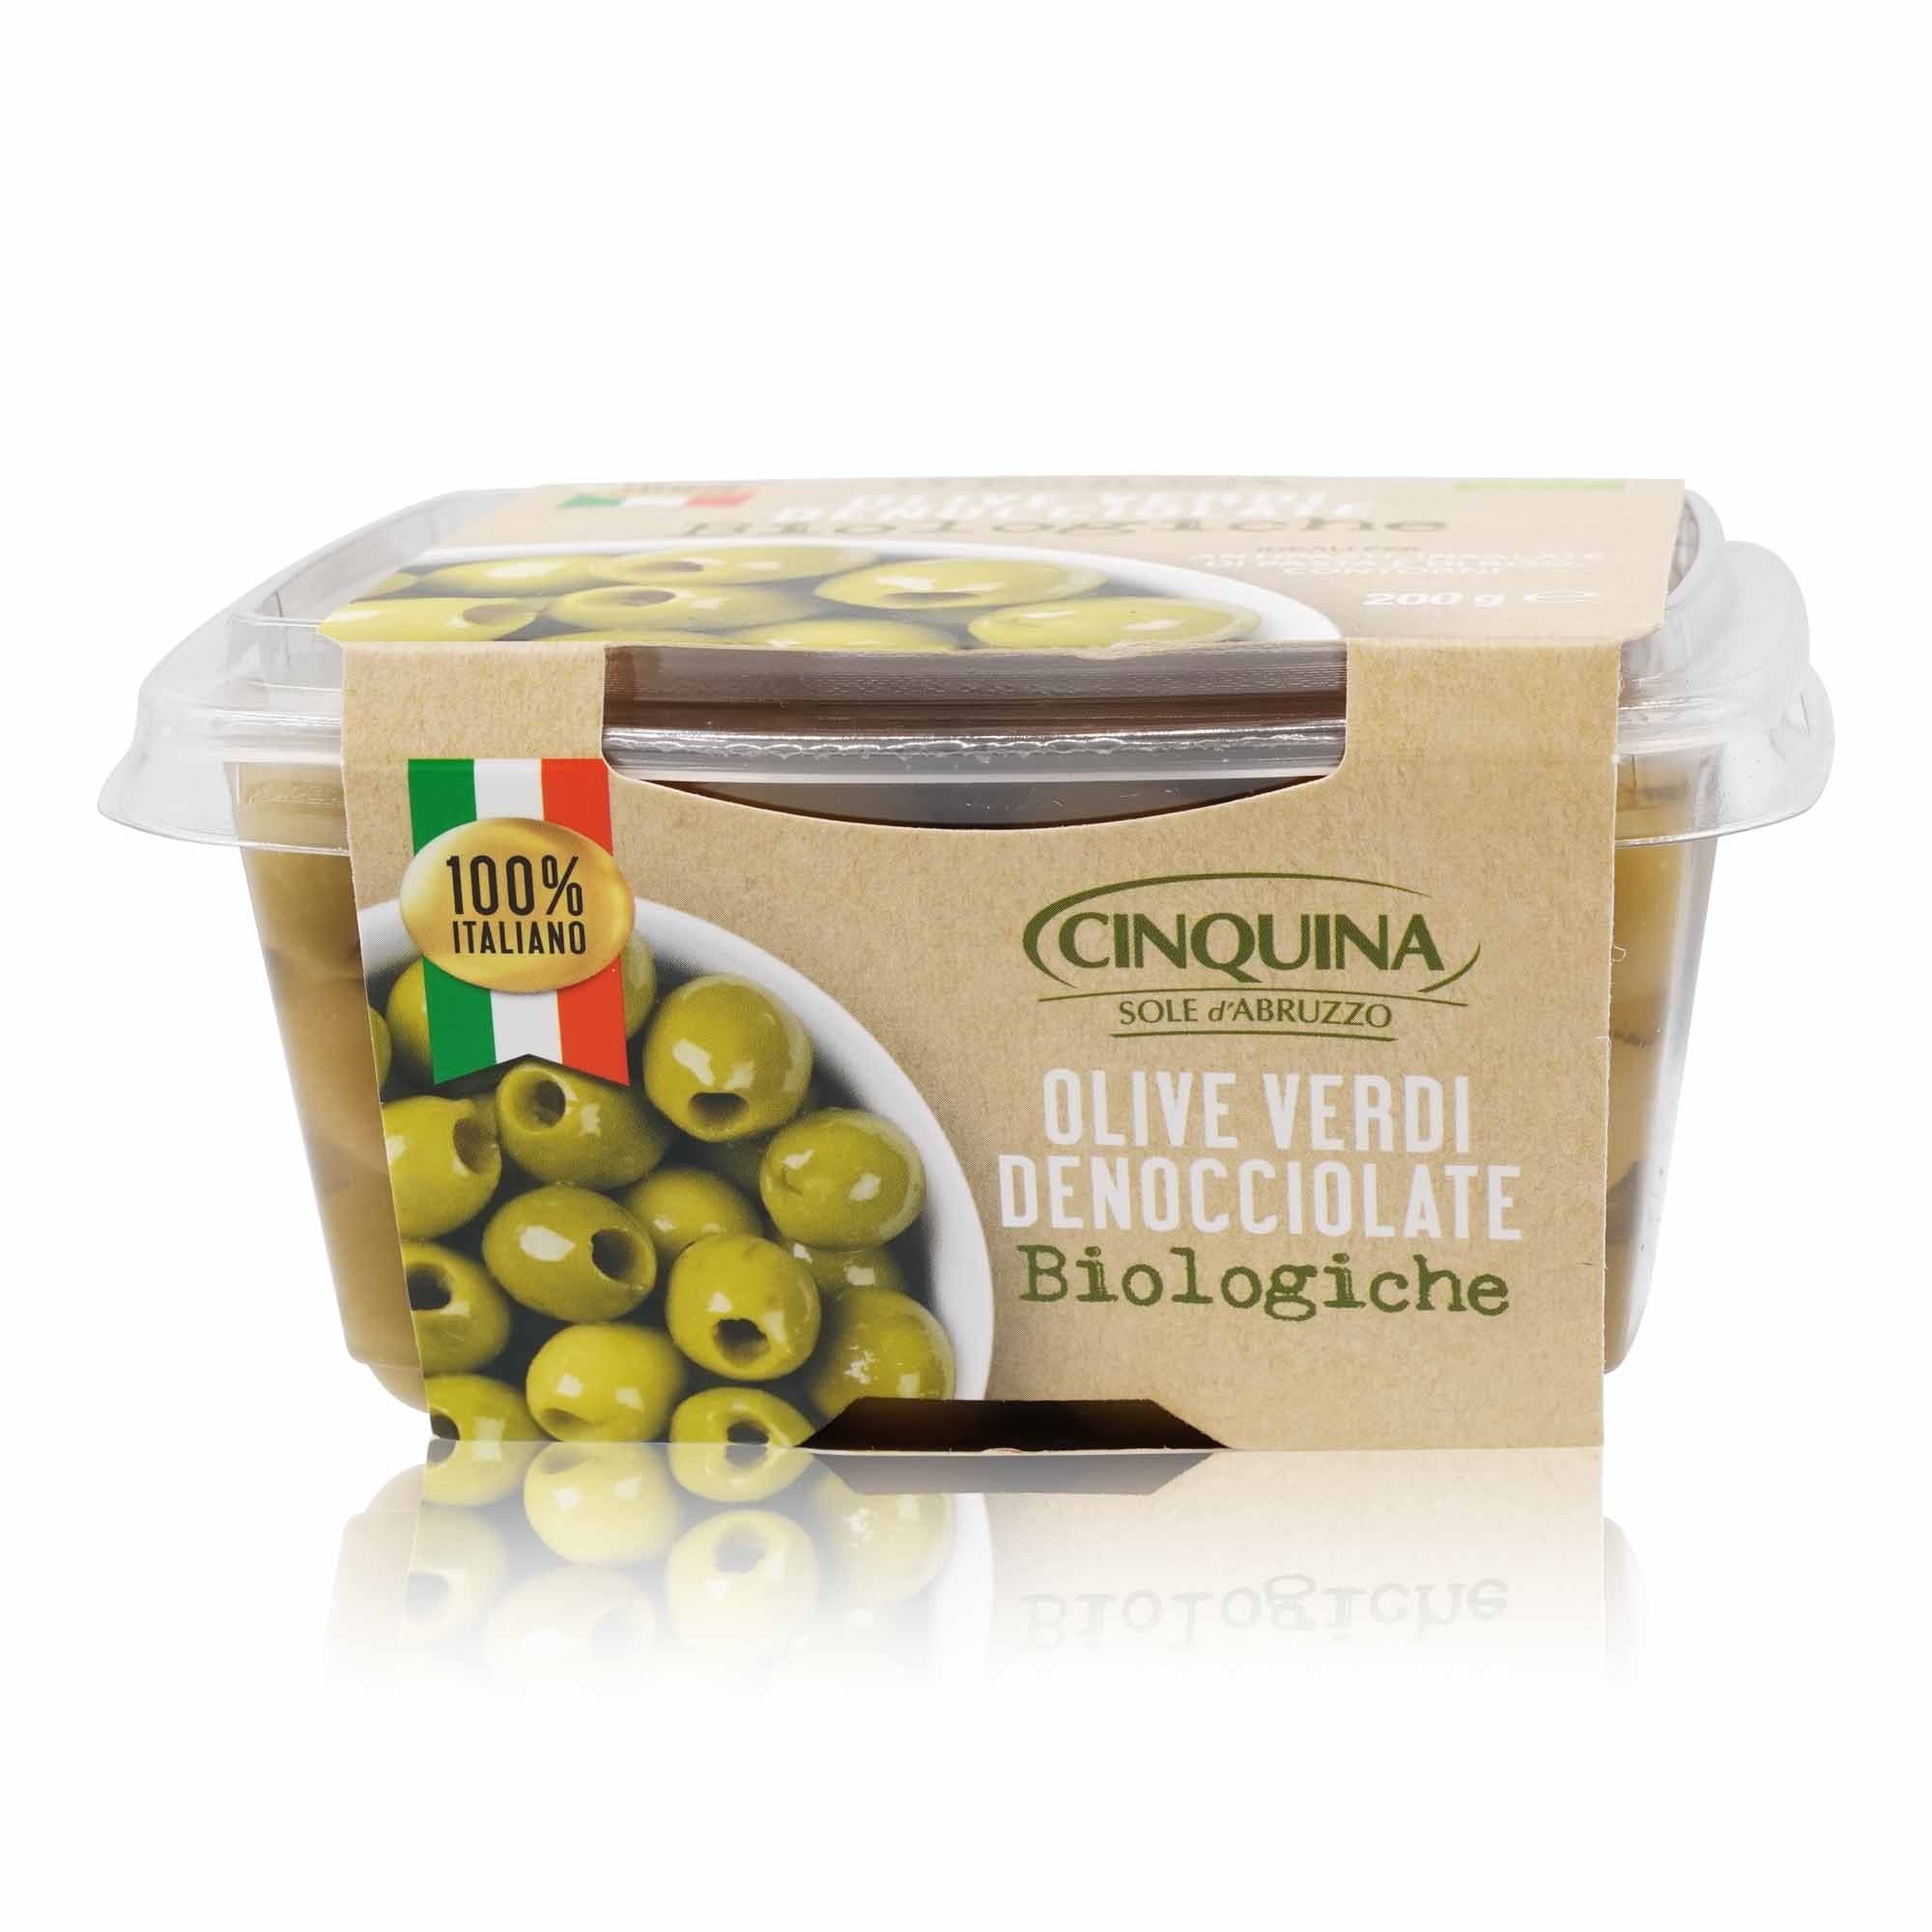 CINQUINA Olive verdi denocciolate BIO – Grüne Oliven entkernt BIO - 0,200kg - italienisch-einkaufen.de